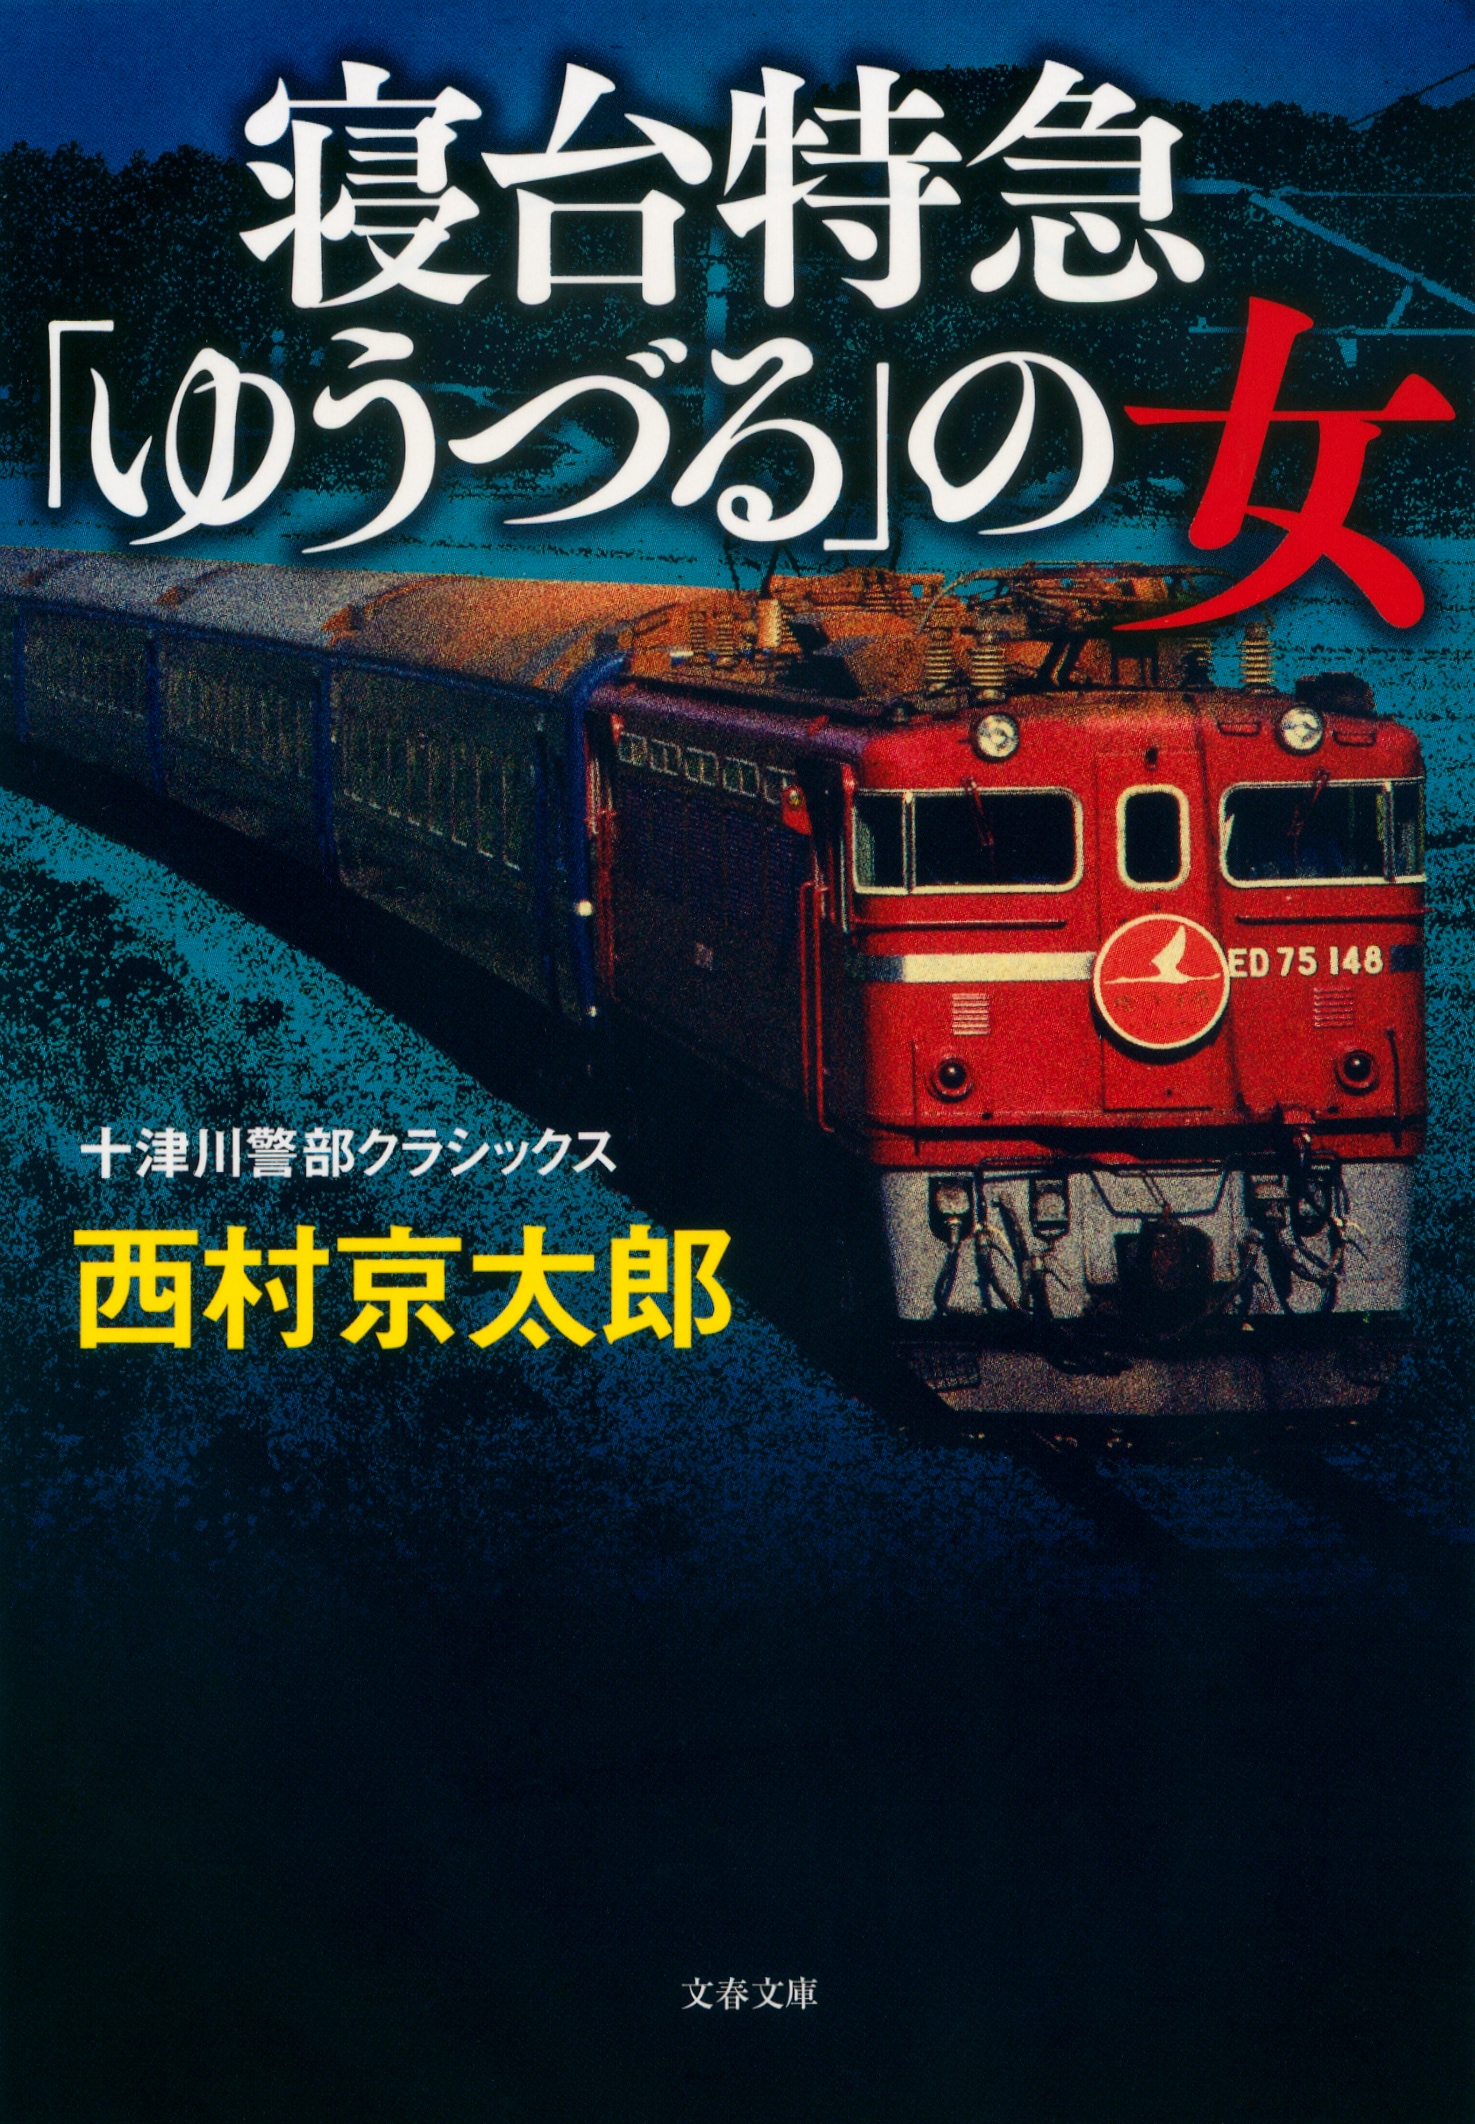 豪華寝台列車の先駆けとなった「上野発の夜行列車」散り際の輝き